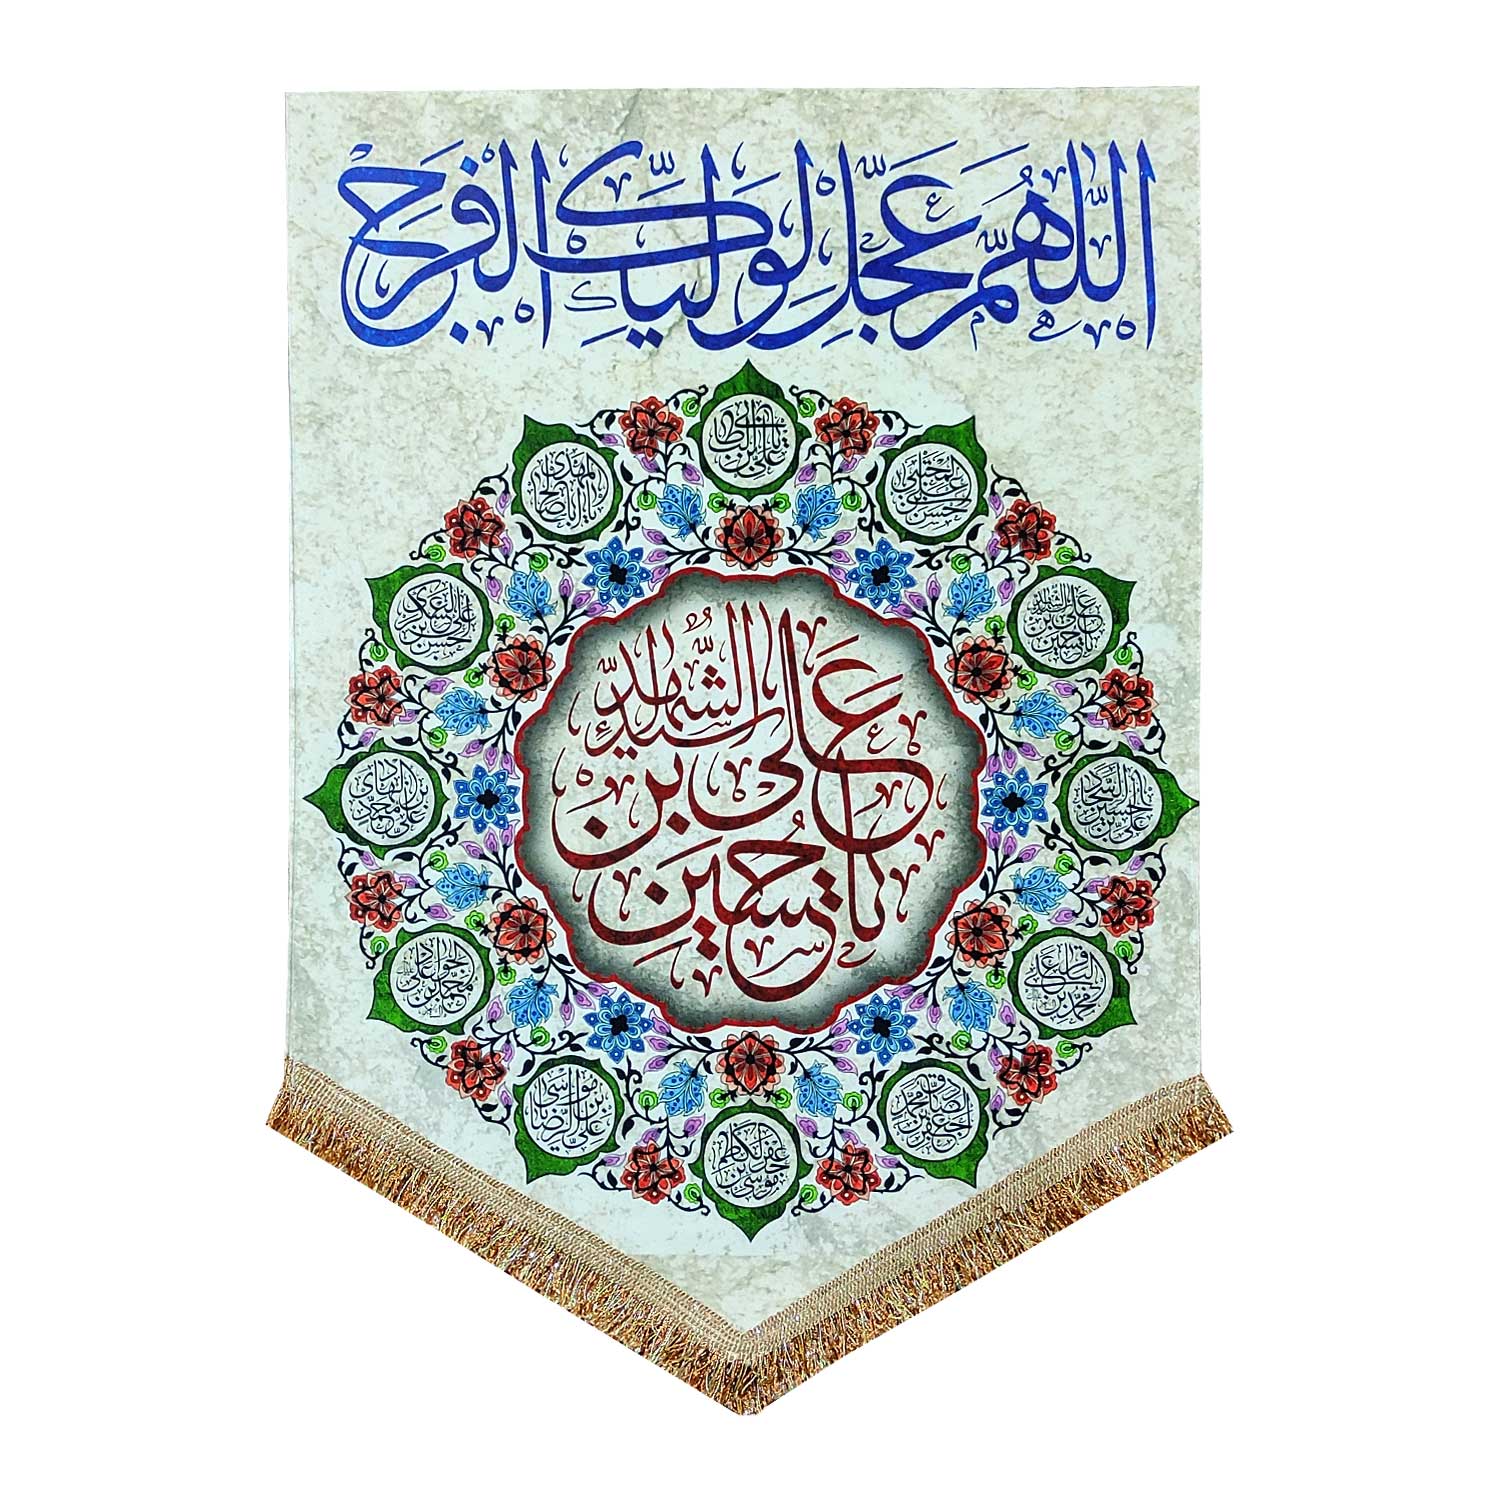 پرچم مدل مذهبی امام حسین طرح یا حسین بن علی و اسامی چهارده معصوم